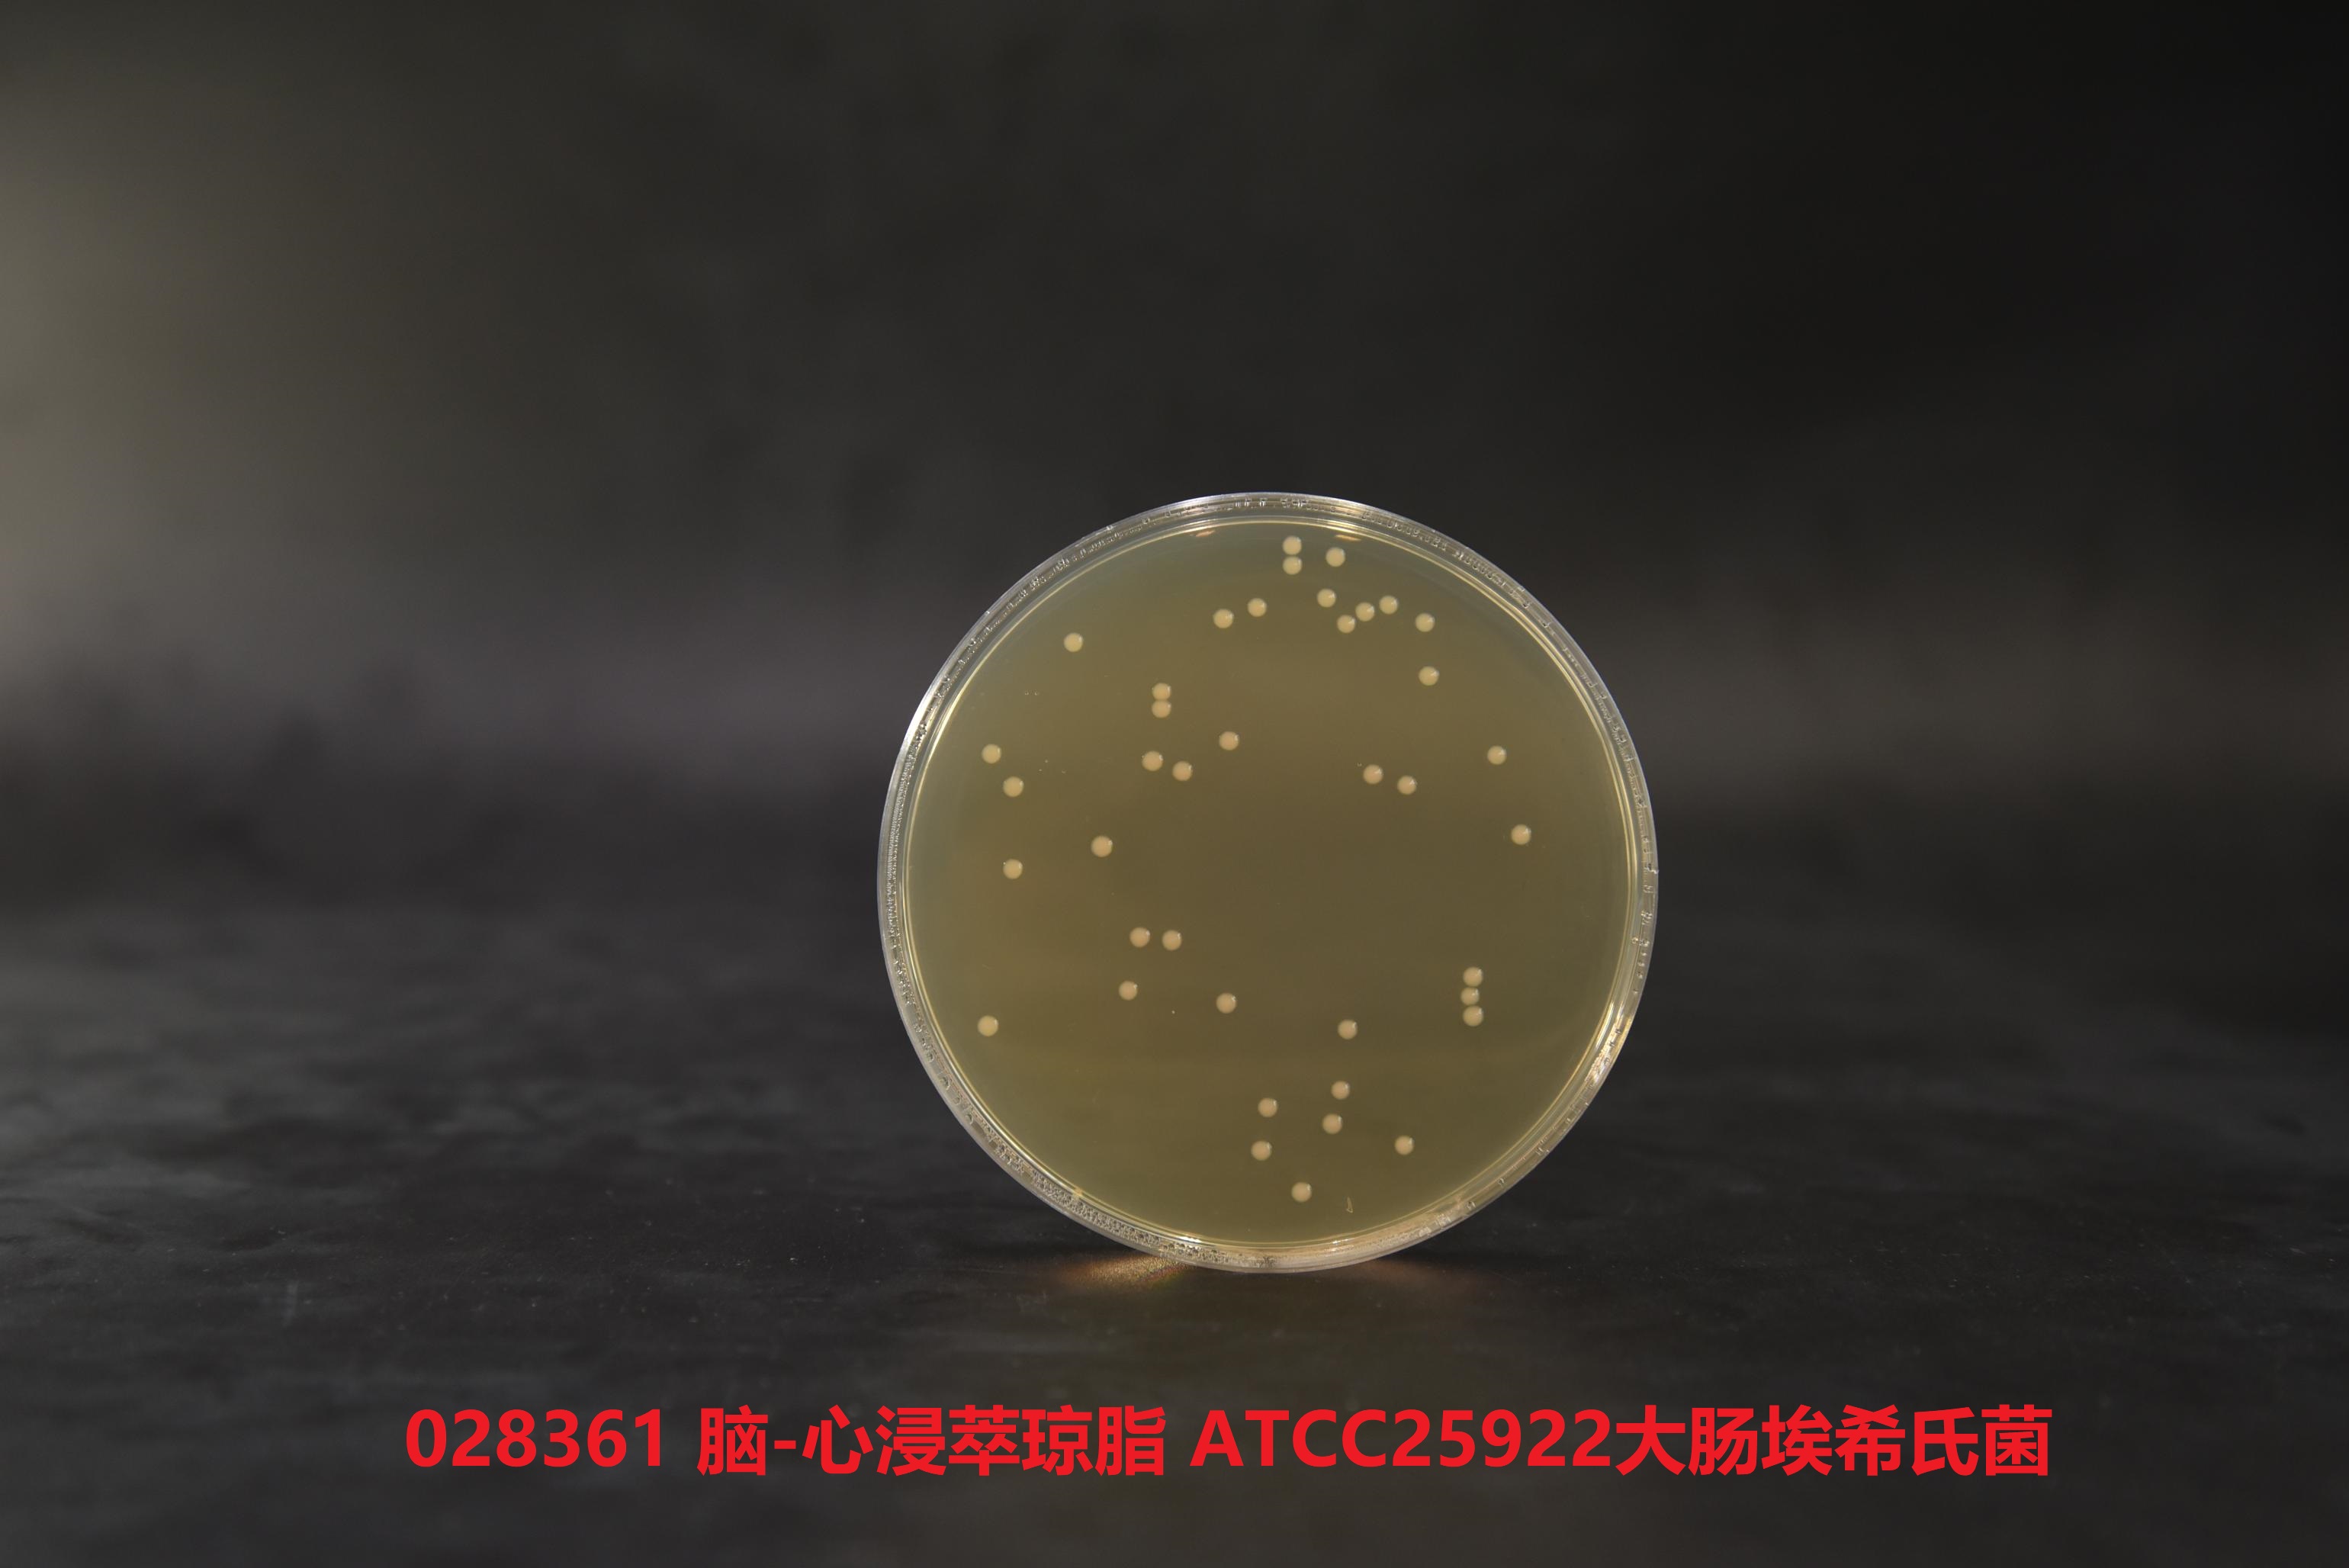 大肠埃希氏菌ATCC25922